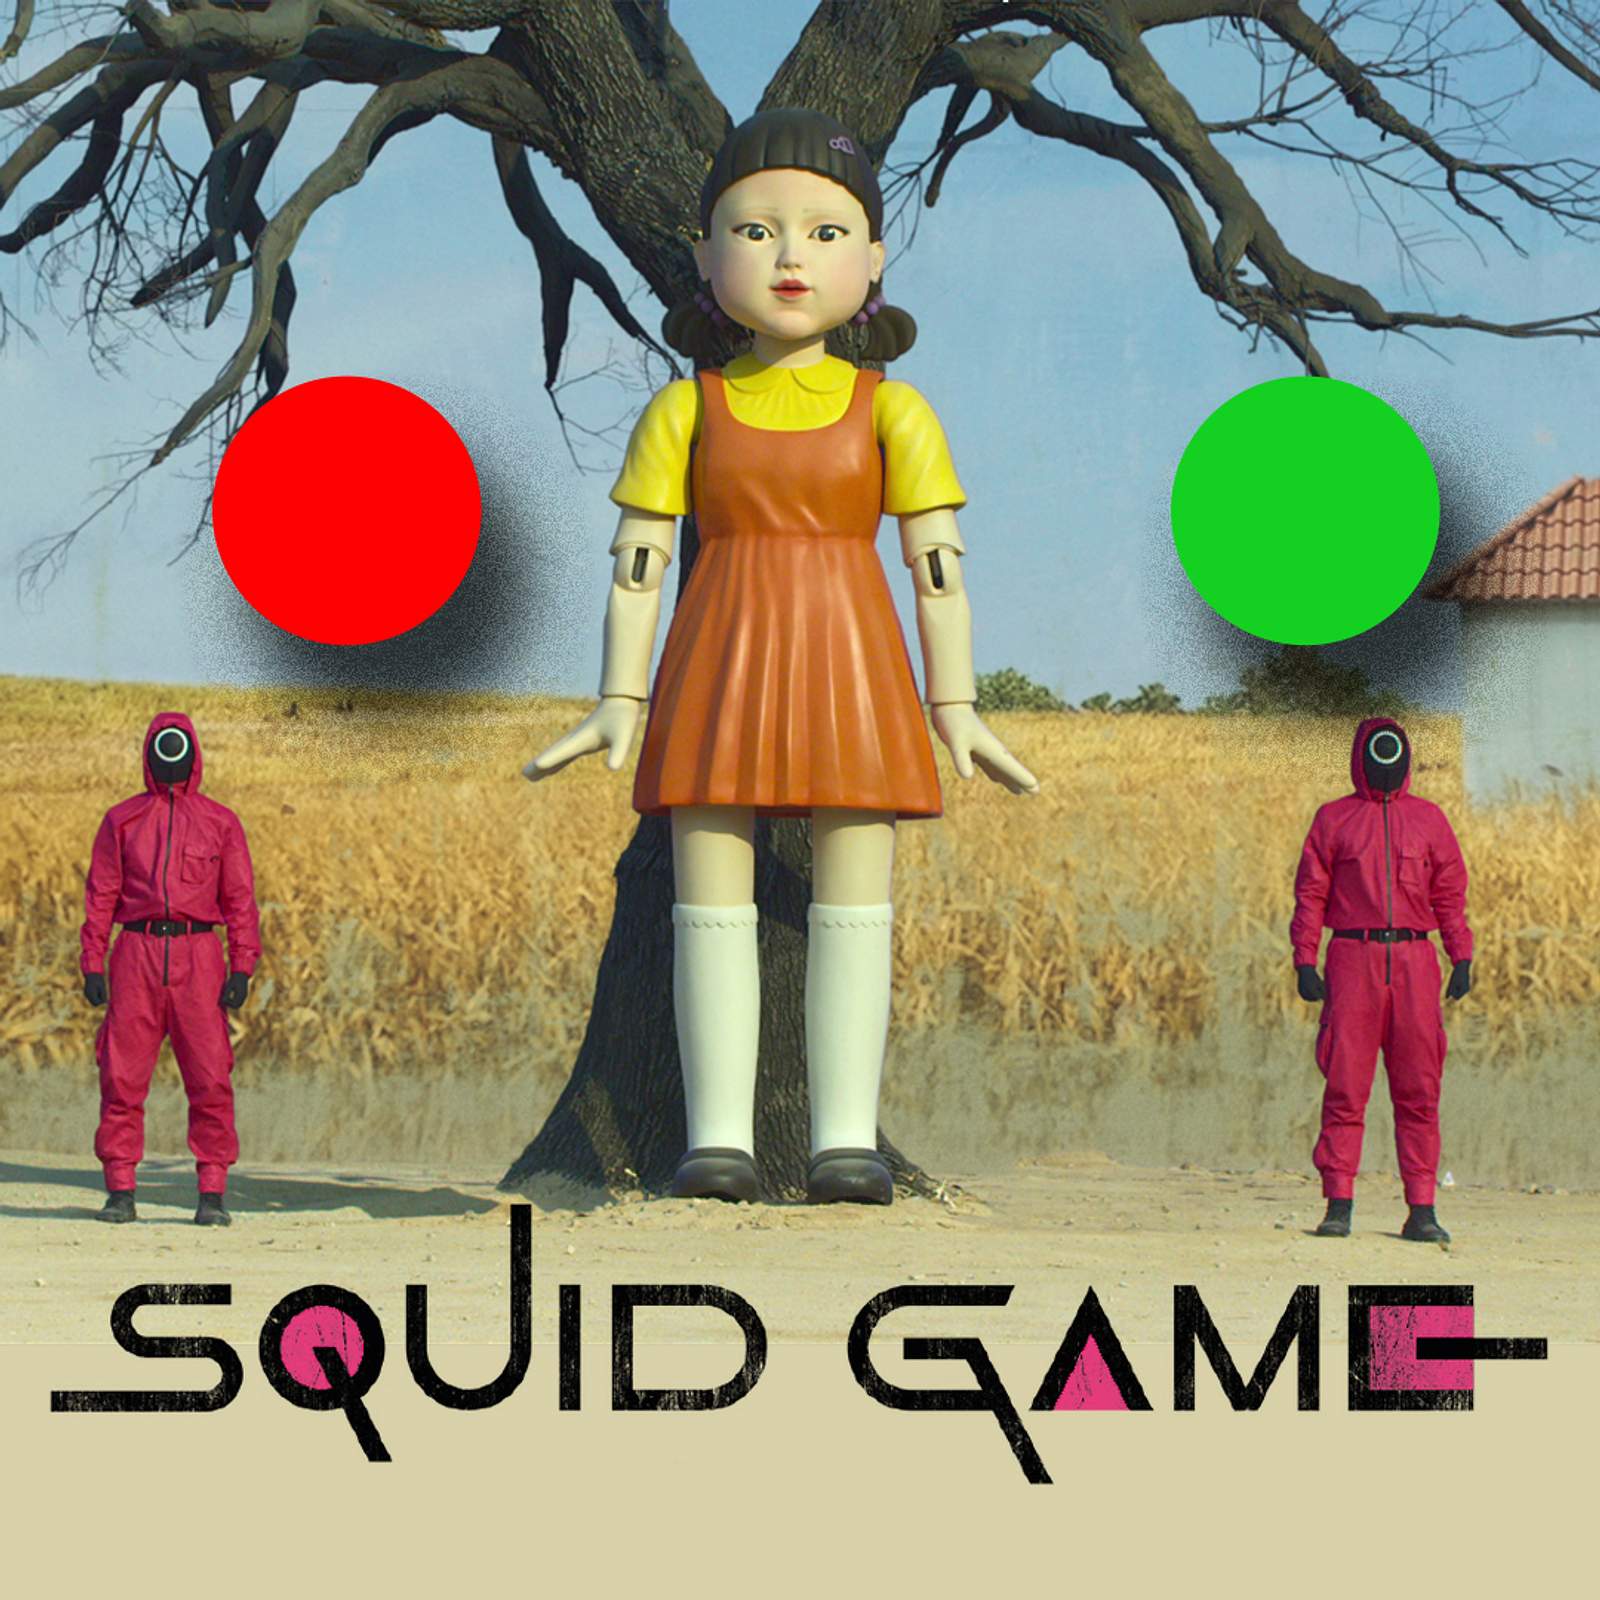 Rotes Licht, grünes Licht“ Spiel: Squid Game“ Version & für